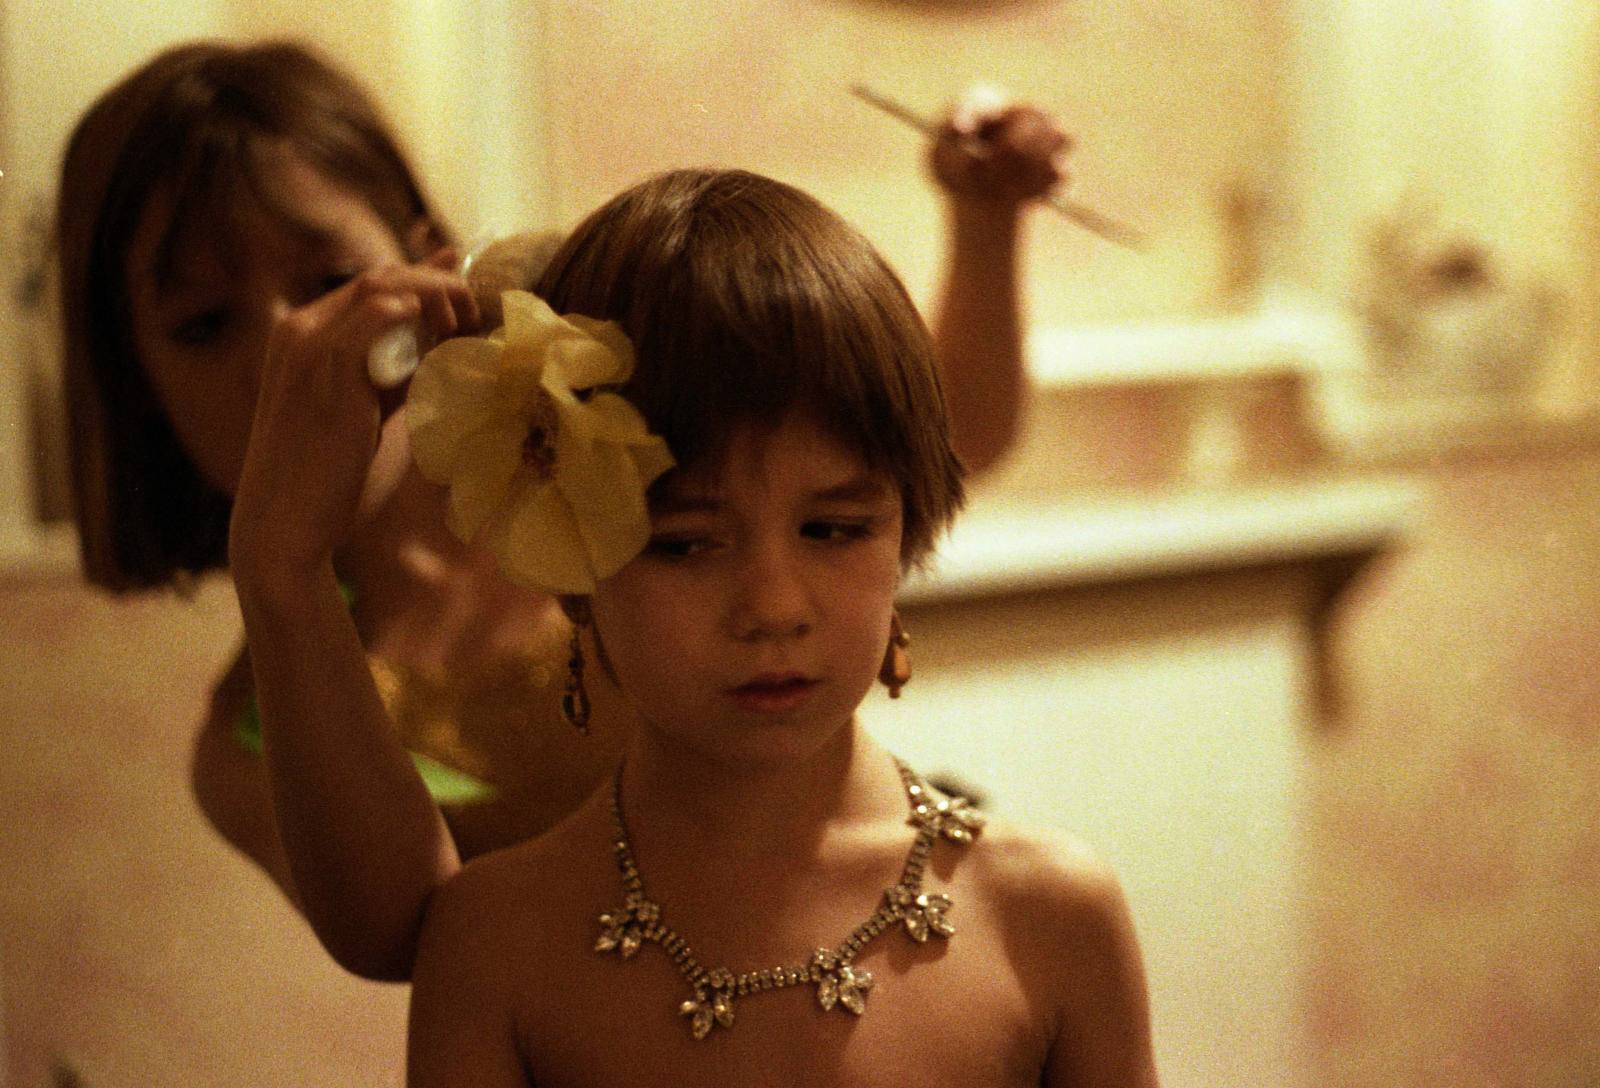  Kate Barry et Charlotte Gainsbourg, 1977 (©ANDREW BIRKIN – LA GALERIE DE L’INSTANT)